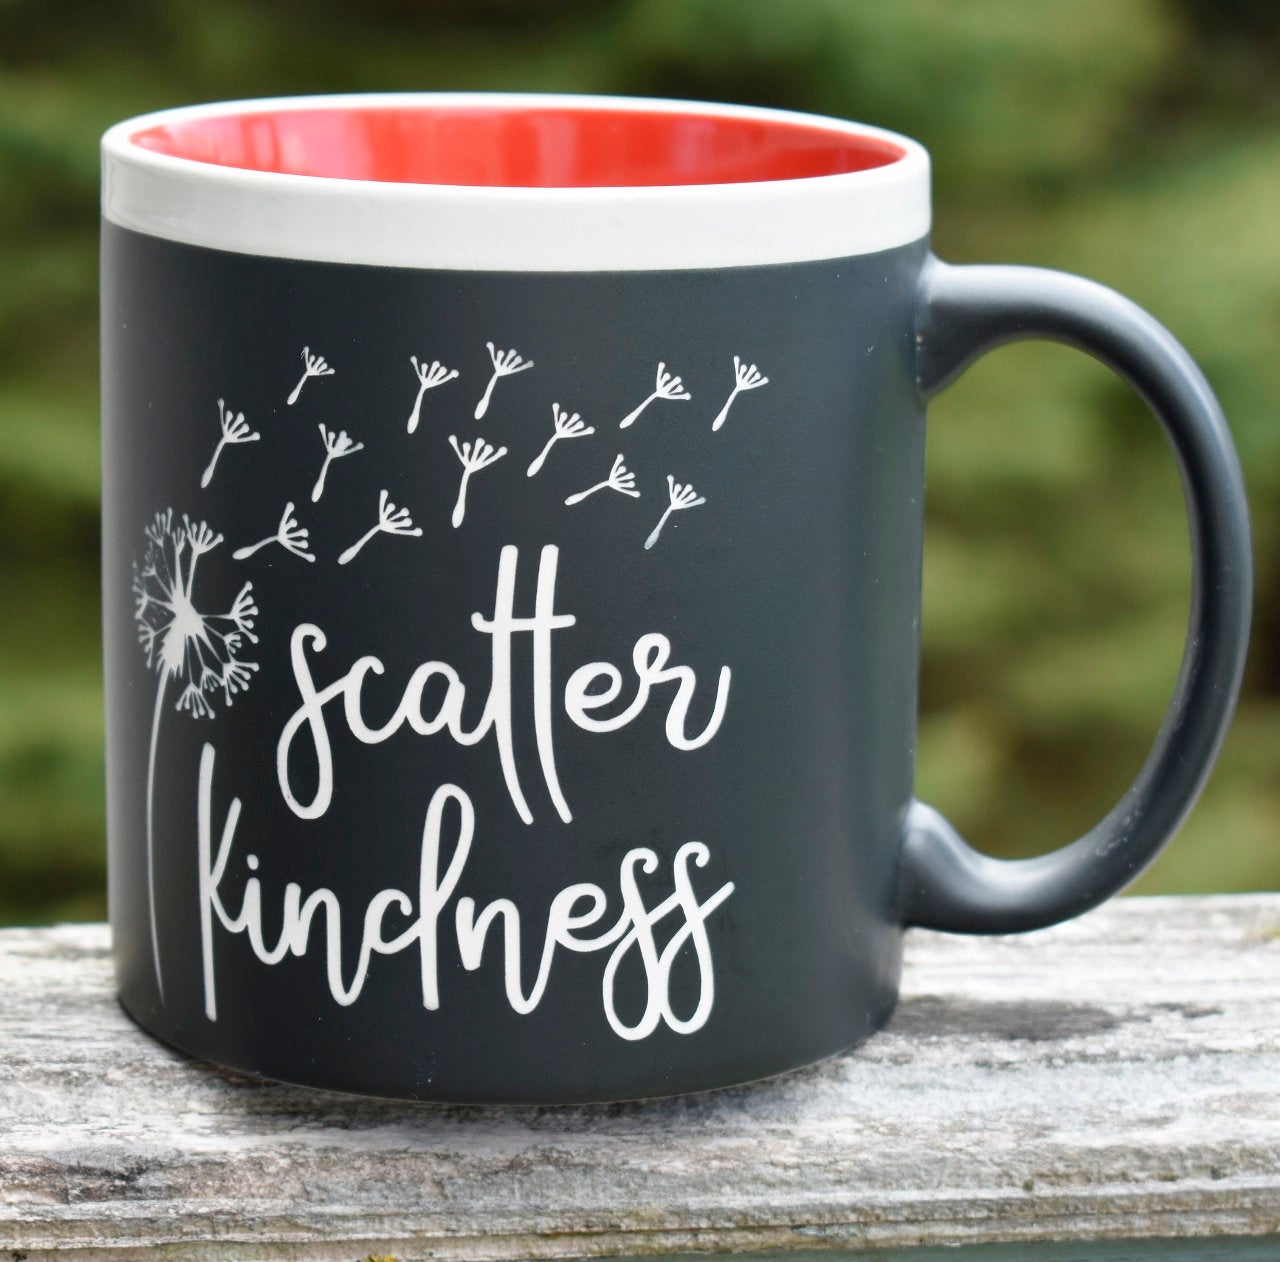 Scatter Kindness 22 oz Coffee Mug Jumbo Message Mug Gift for Her Dandelions Theme